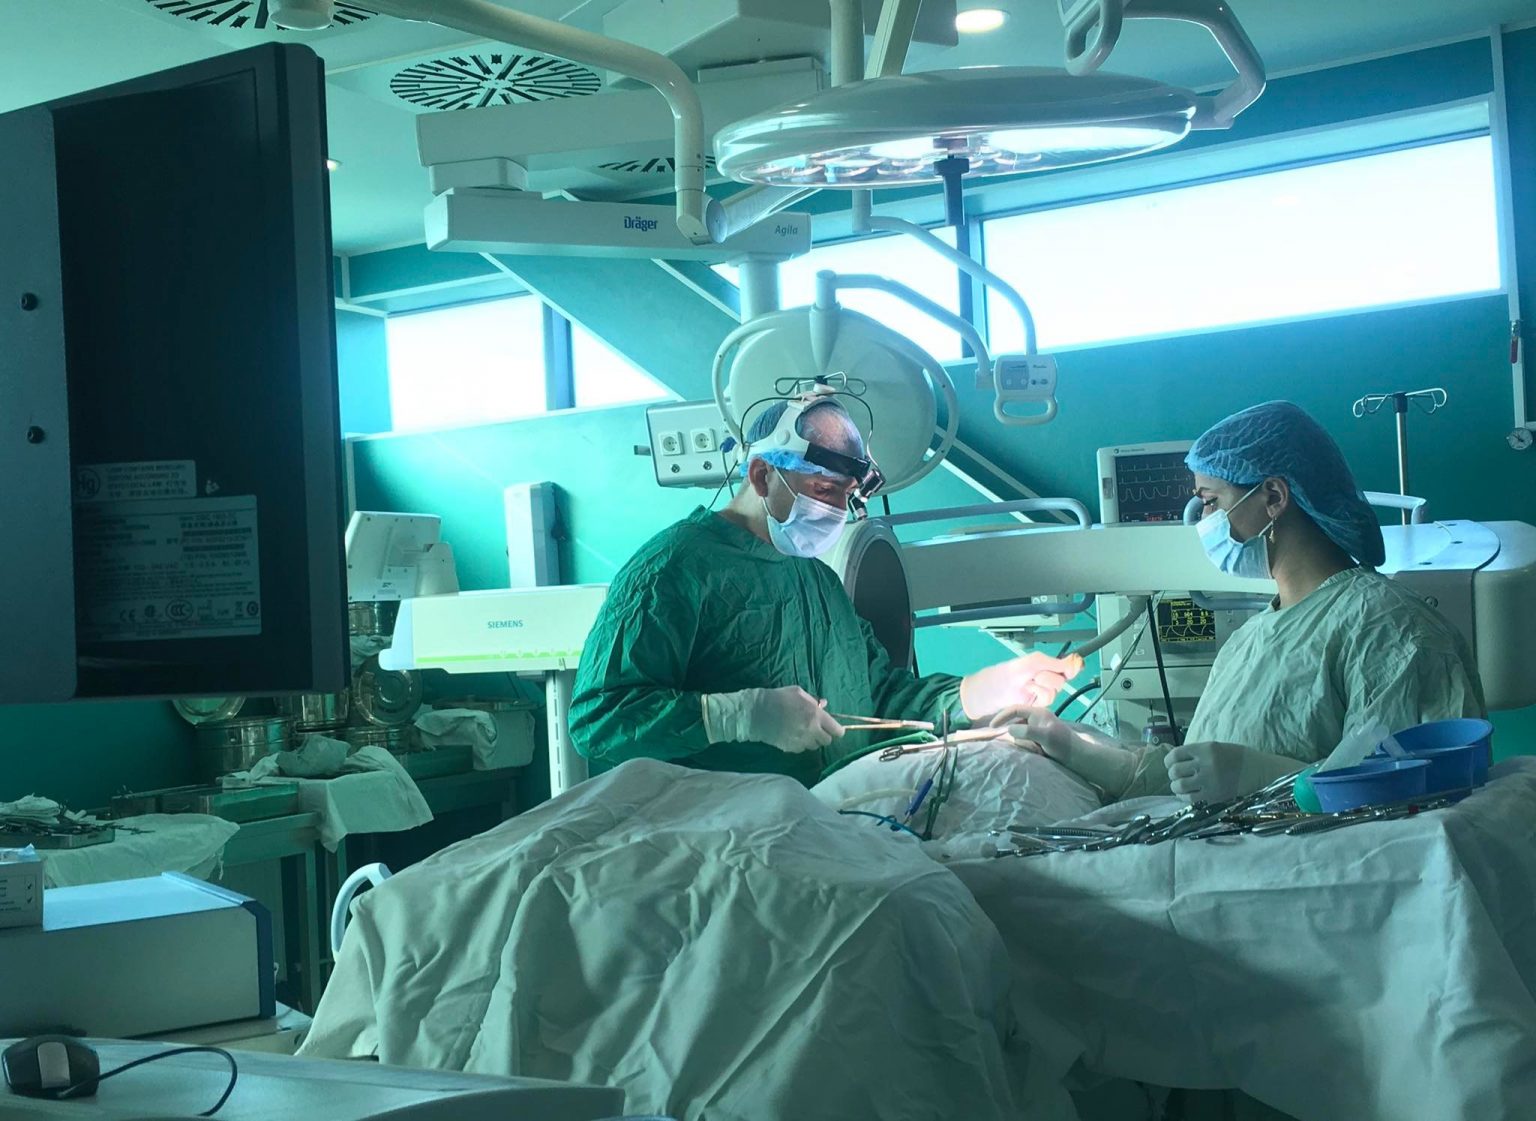 ՌԴ-ից ժամանած բժիշկը Ստեփանակերտում հետազոտություններ և նեյրովիրաբուժական միջամտություն է իրականացրել